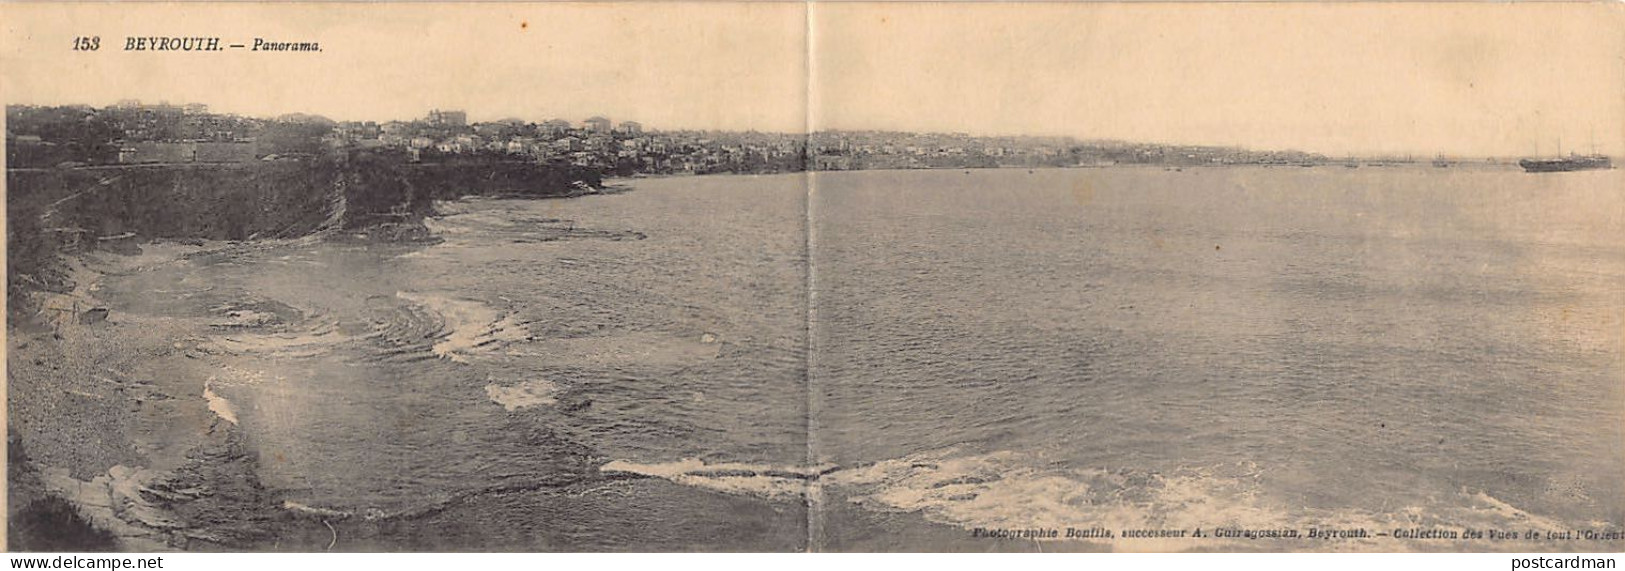 Liban - BEYROUTH - Panorama - CARTE DOUBLE - Ed. Bonfils, Successeur A. Guiragossian 153 - Libanon